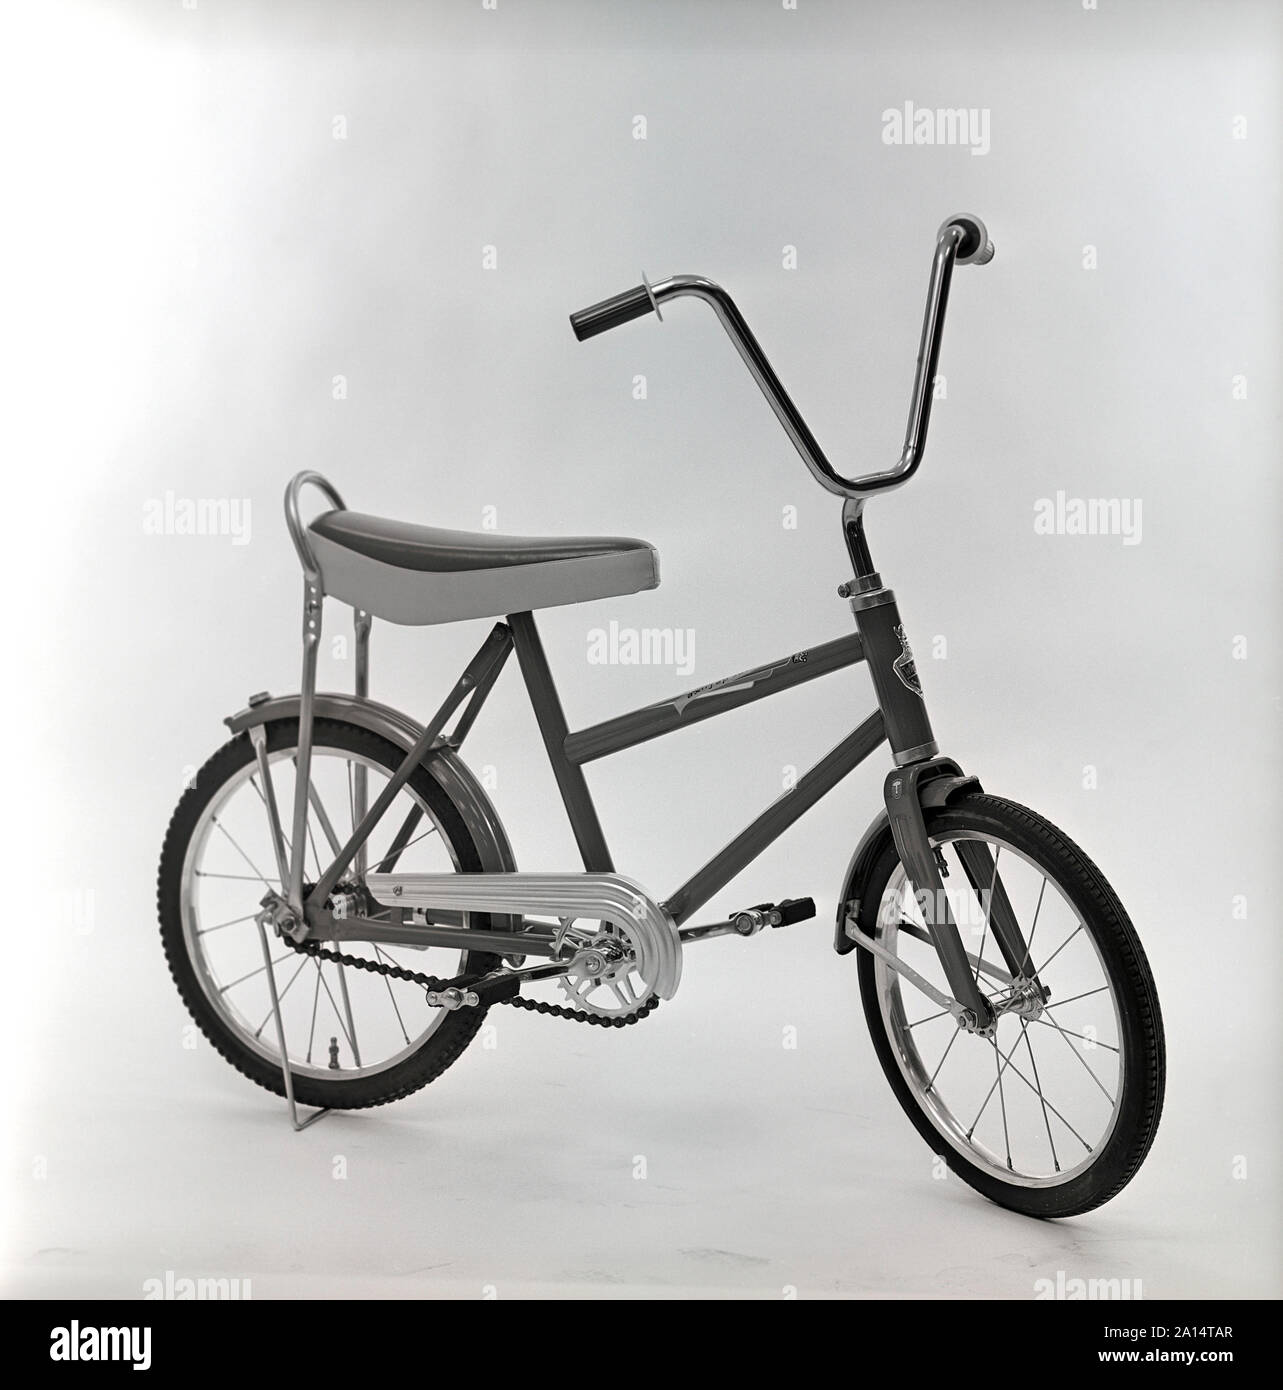 1960er Fahrrad. Einen Kinder Fahrrad Modell, das die coolste Sache um für  ein Kind der 1960er Jahre mit hohen Lenker und ein Laib Sitz betrachtet  wurde. Schweden 1966 ref CV 40-9 Stockfotografie - Alamy